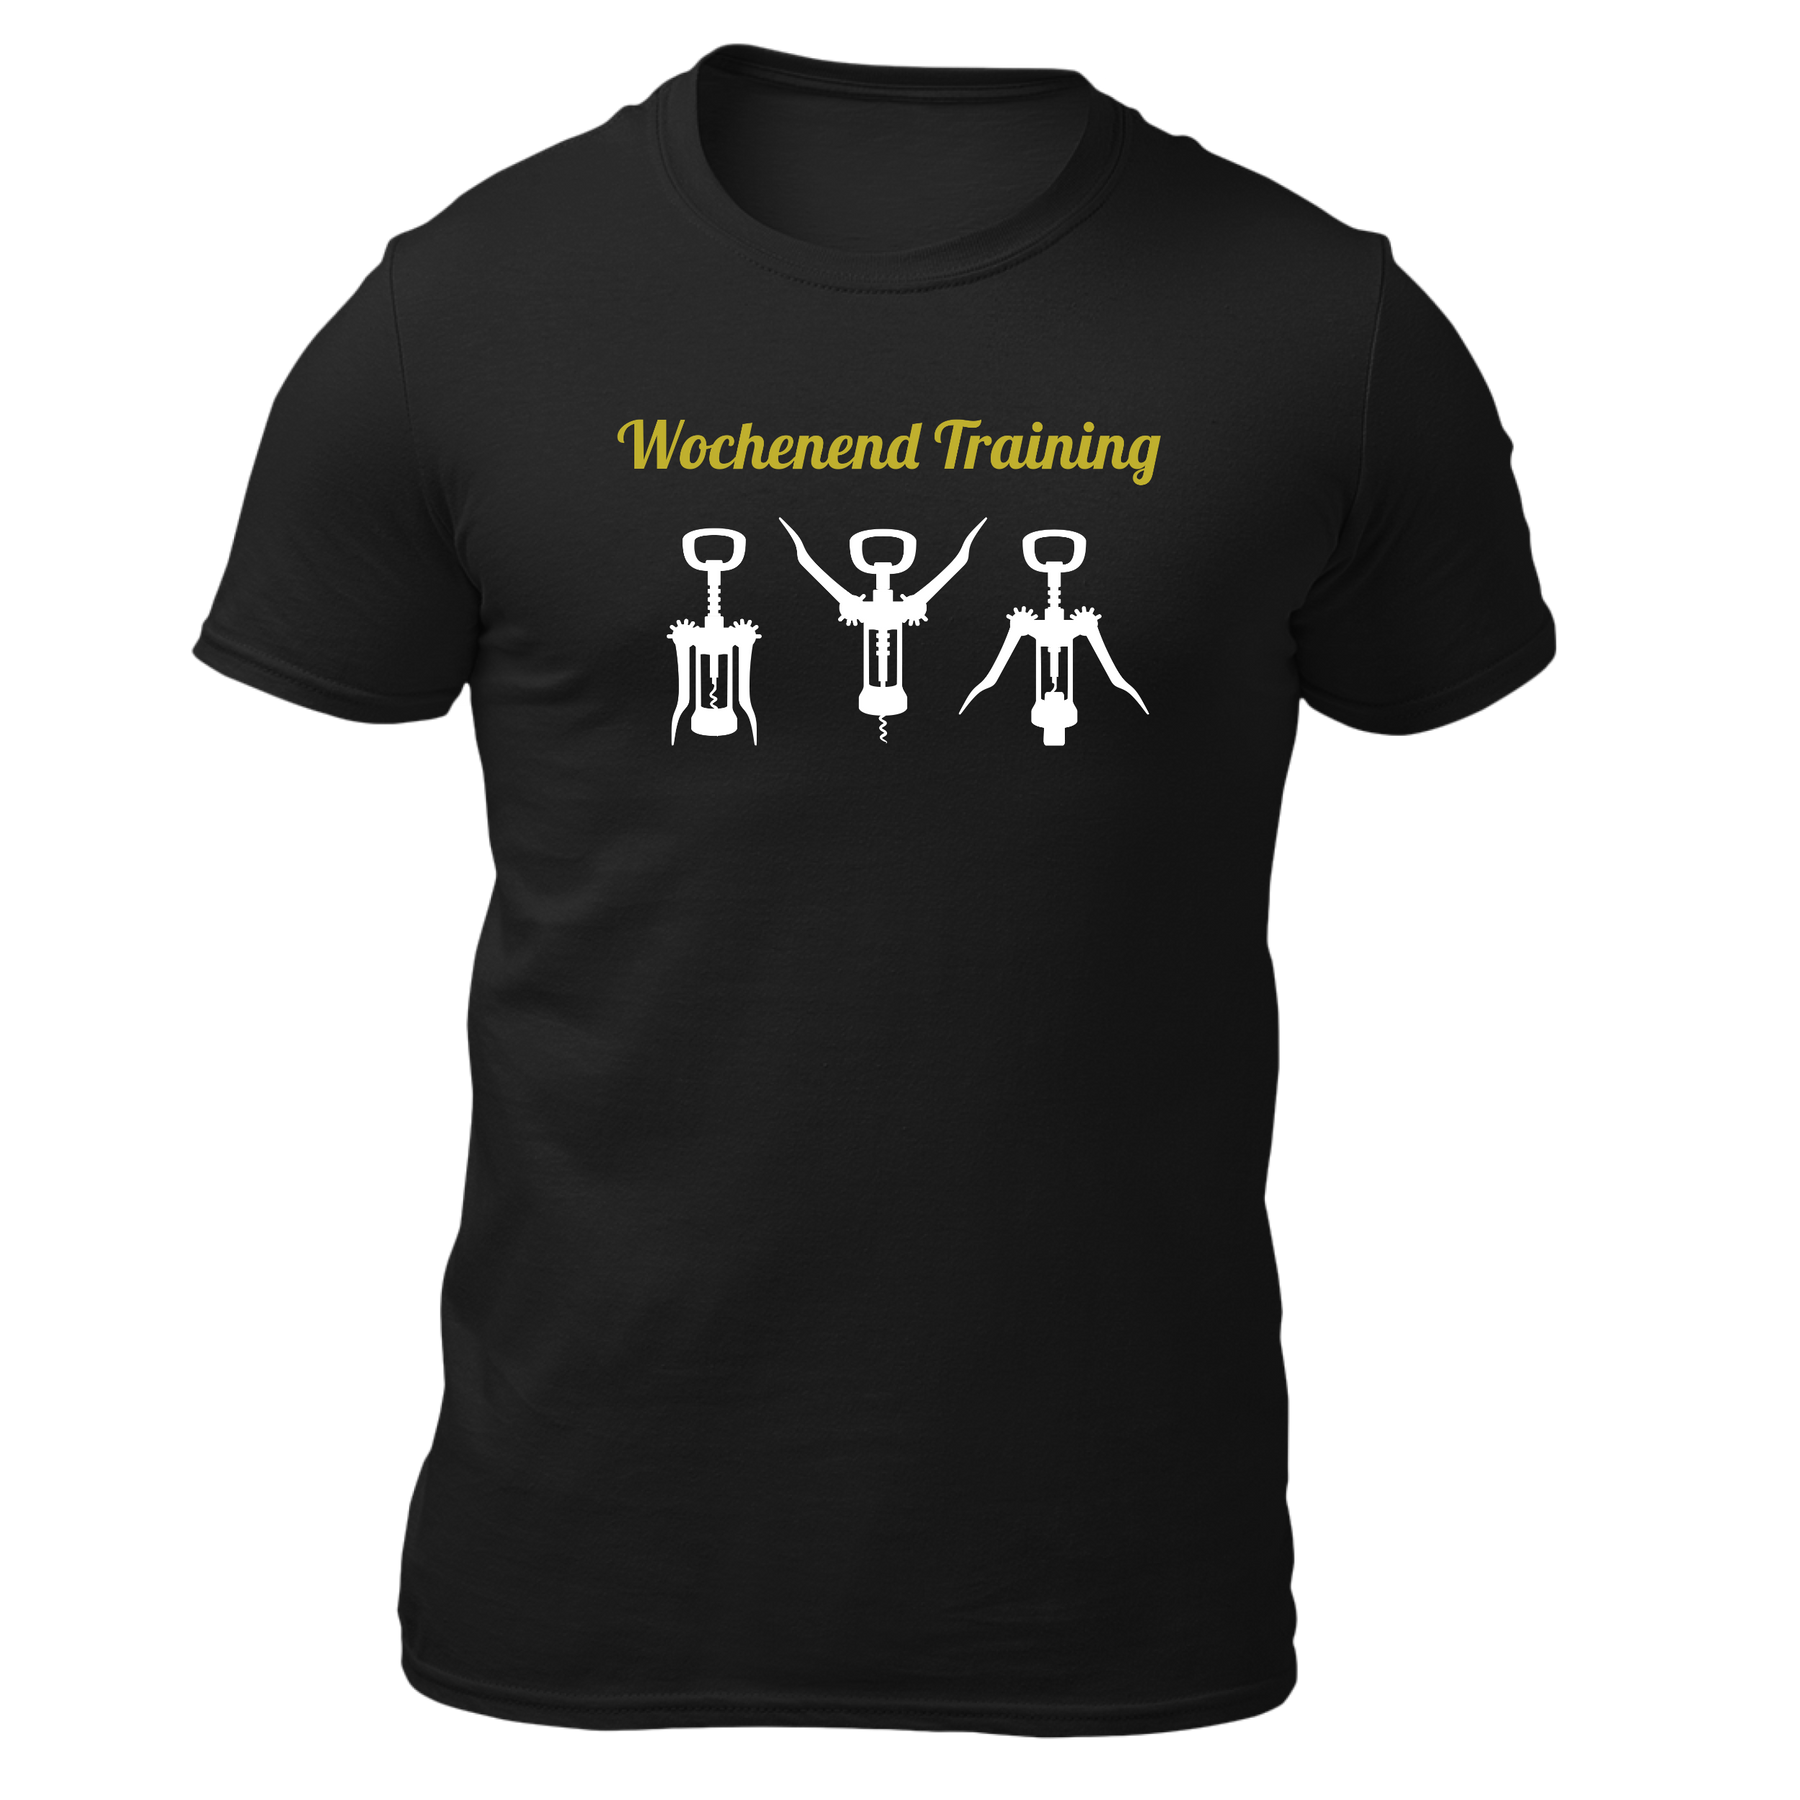 Wochenend Training - Herren Shirt Bio - Schwarz / S - Shirts & Tops